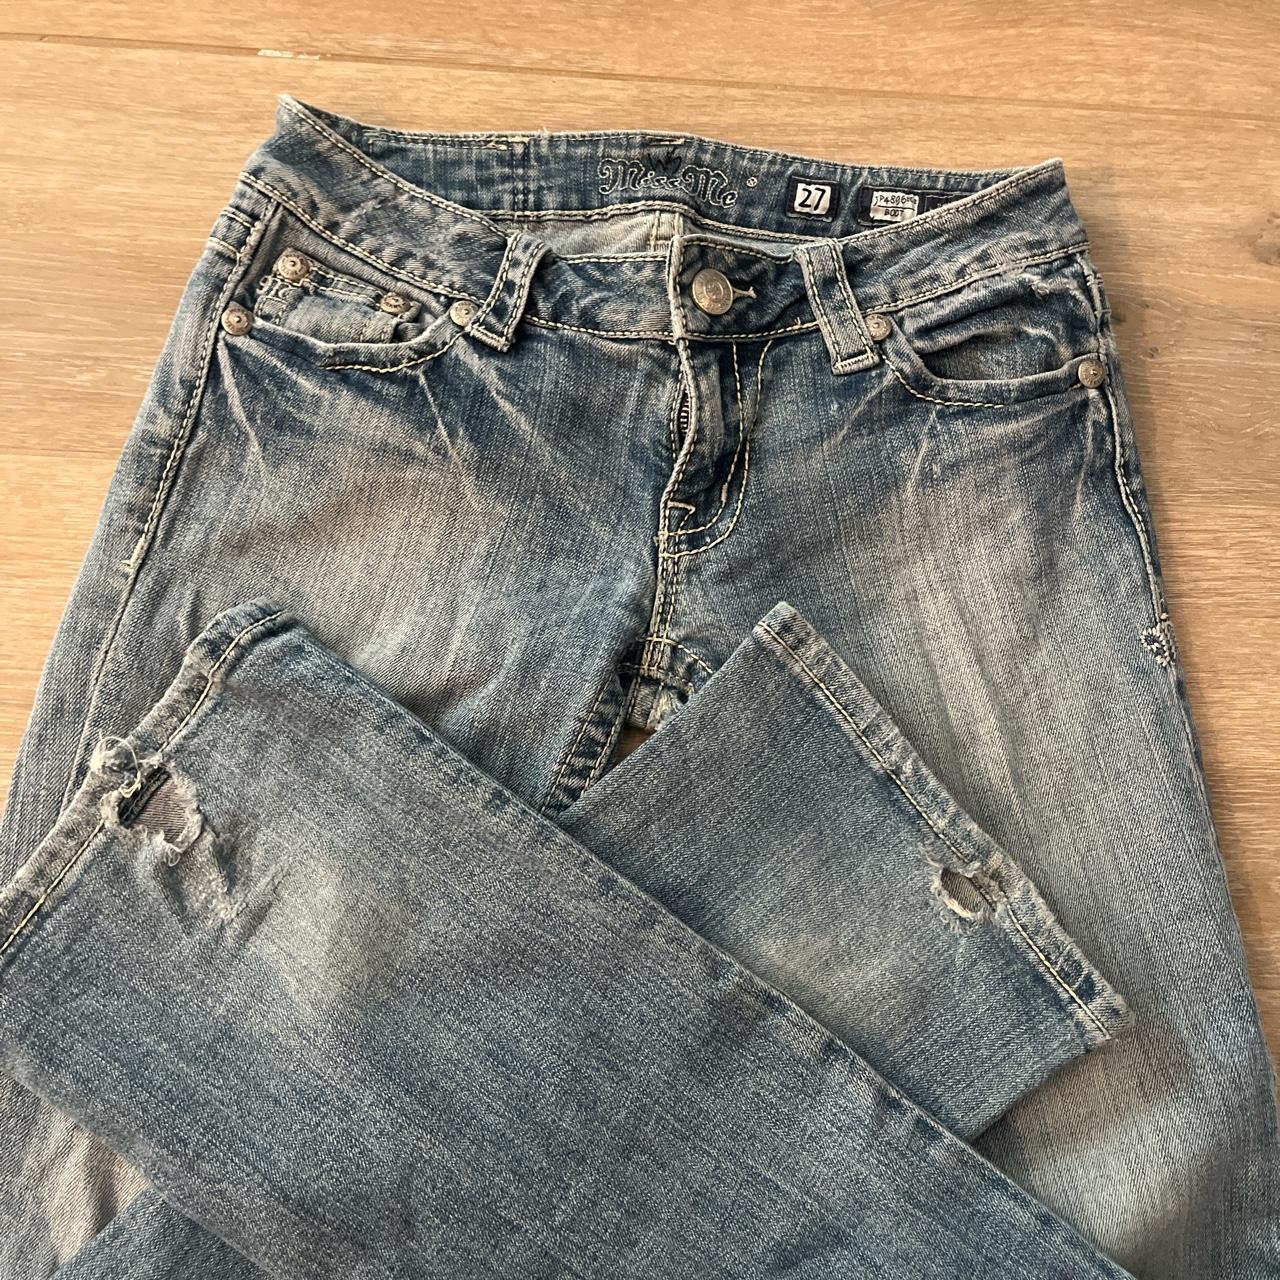 Miss Me jeans size 27 women’s - - - the zipper is... - Depop